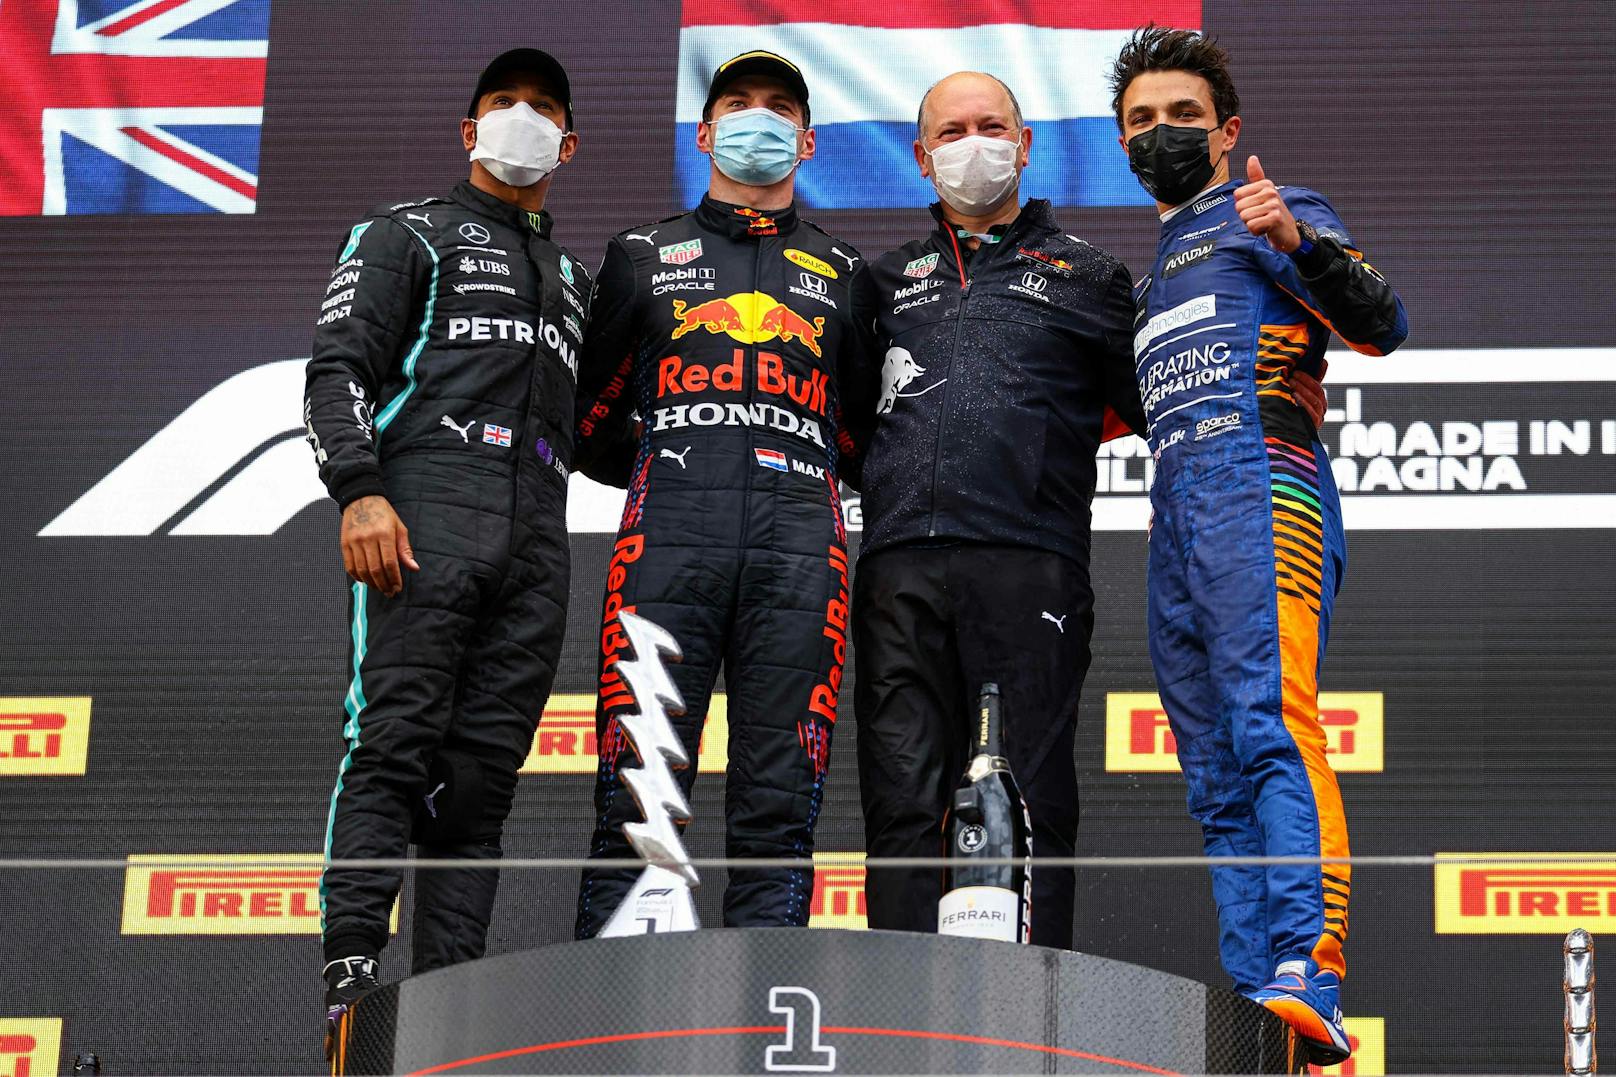 Verstappen schlug in Imola zurück. Der Niederländer siegte vor Hamilton, sagte dem siebenfachen Weltmeister den Kampf an. McLaren-Pilot Lando Norris wurde sensationell Dritter.